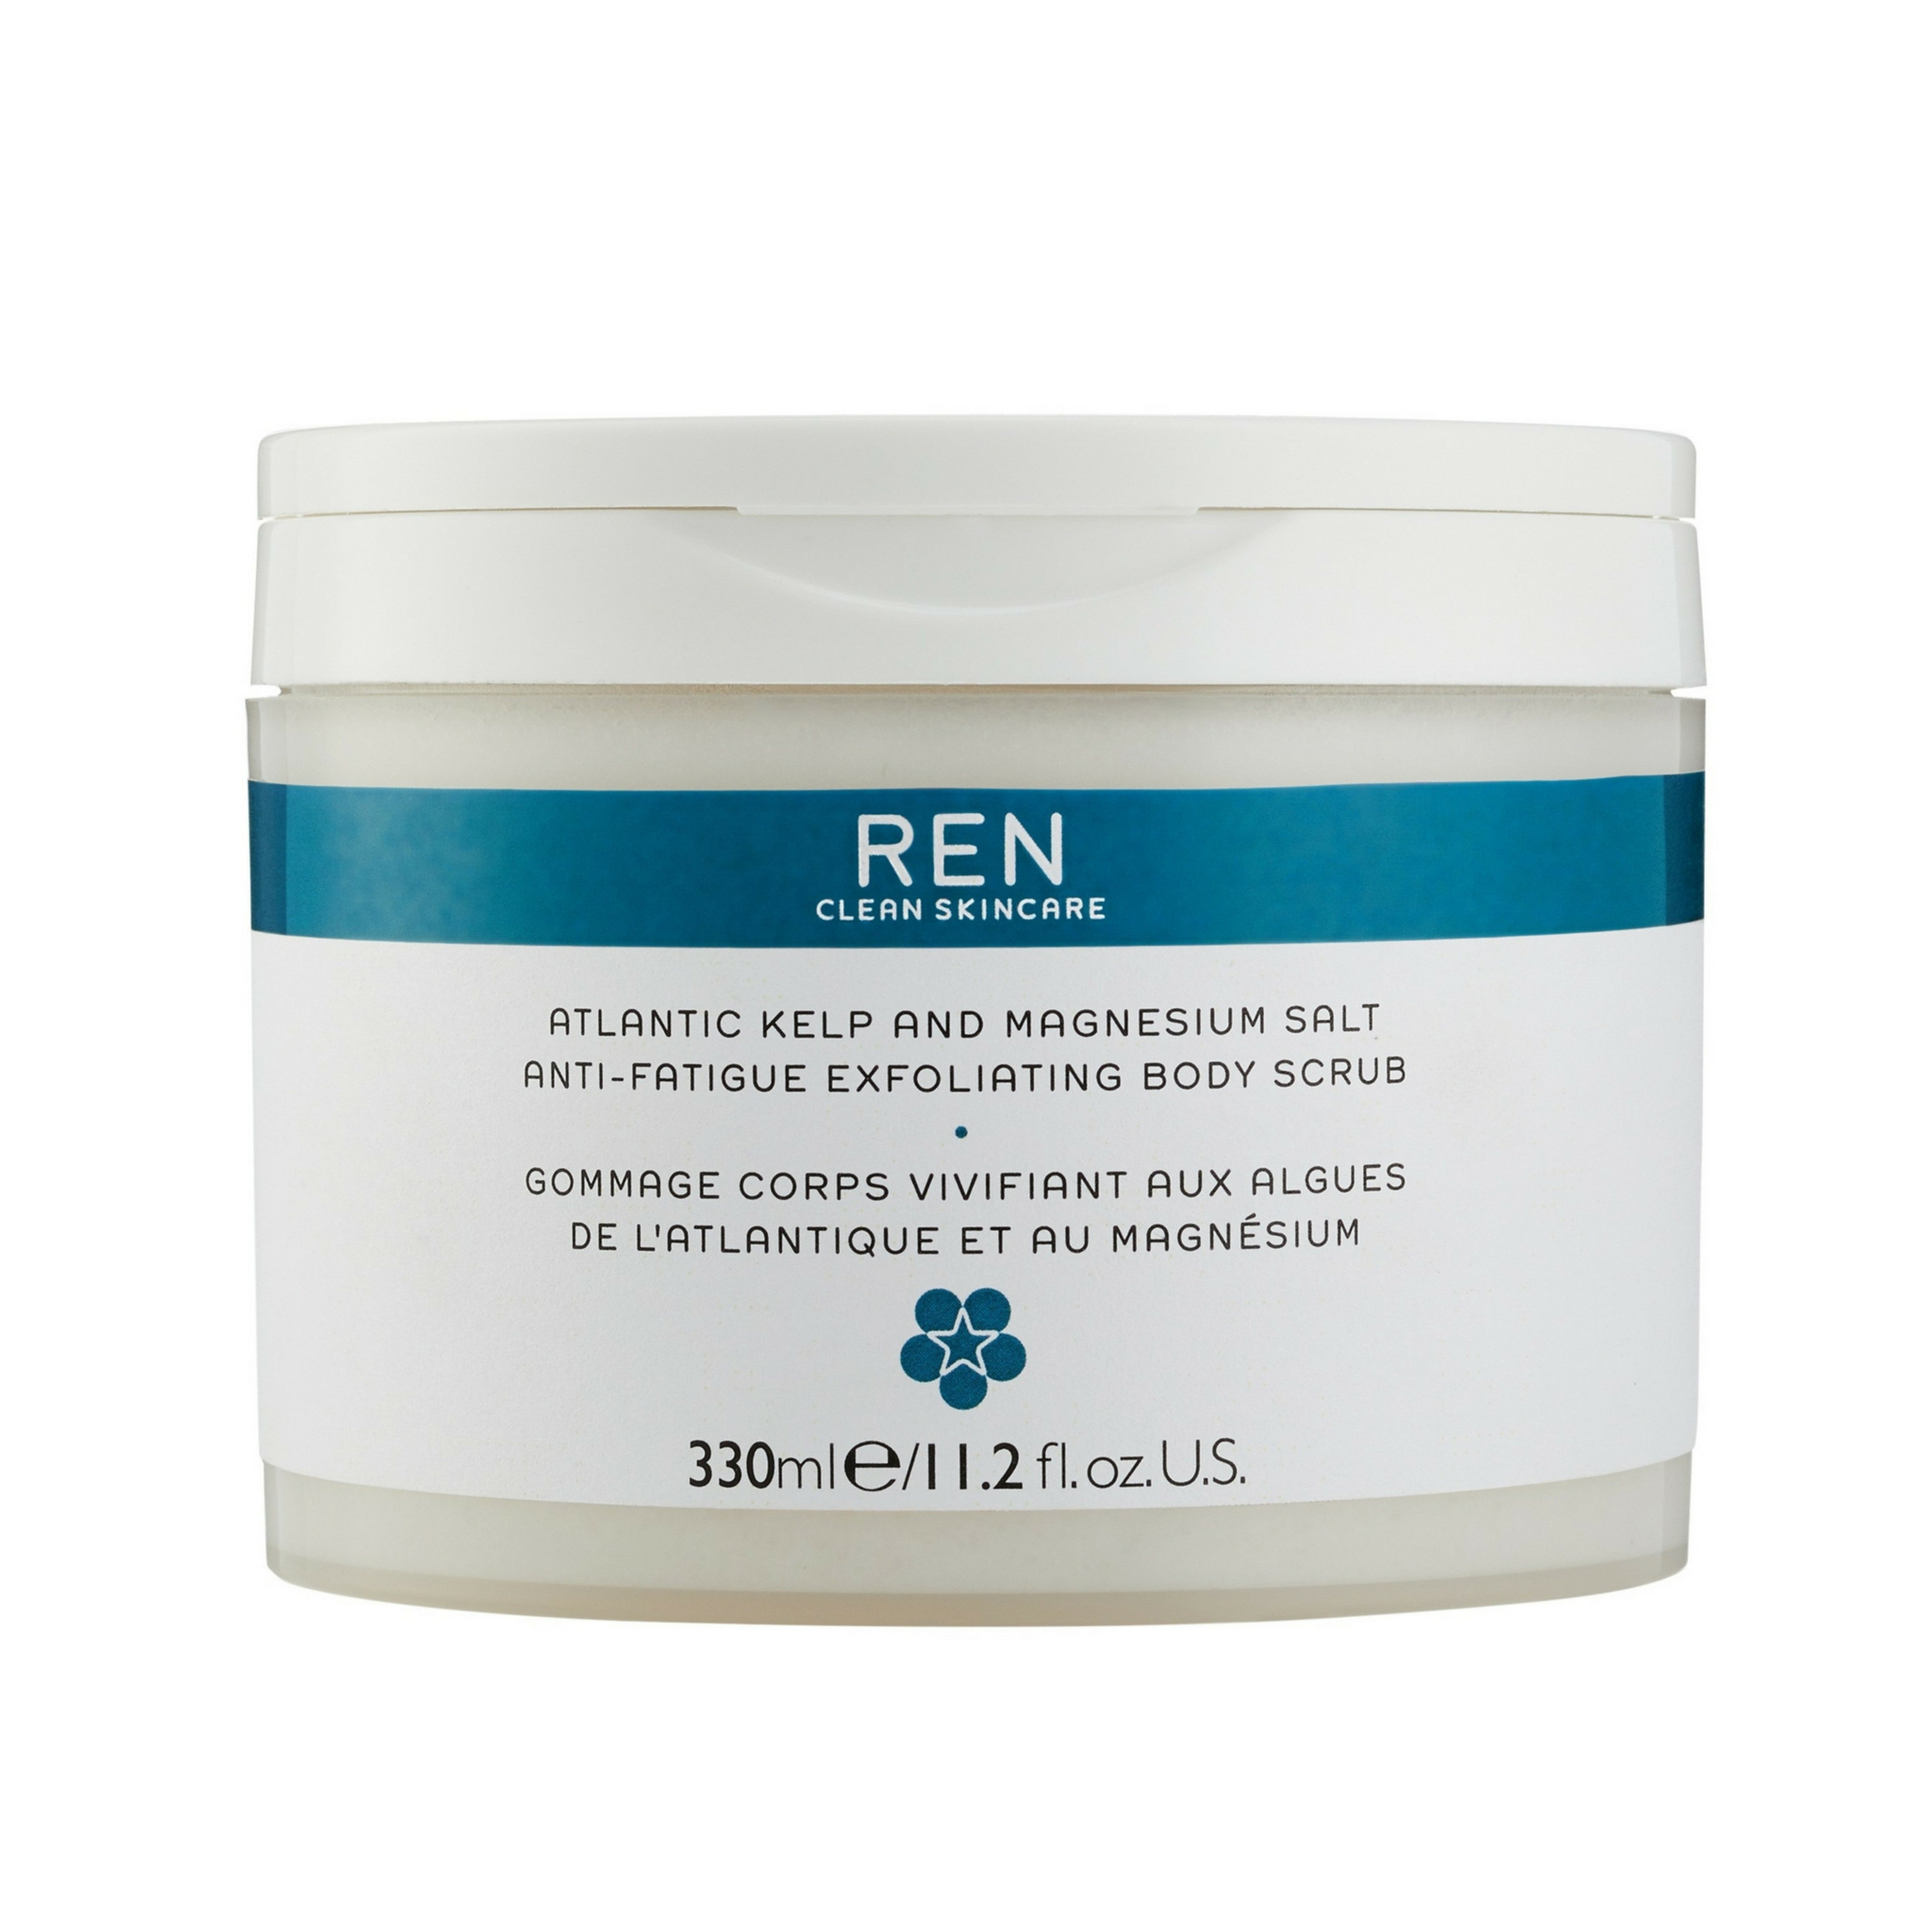 Ren Skincare - Atlantic Kelp And Magnesium Salt Anti-Fatigue Exfoliating Body Scrub